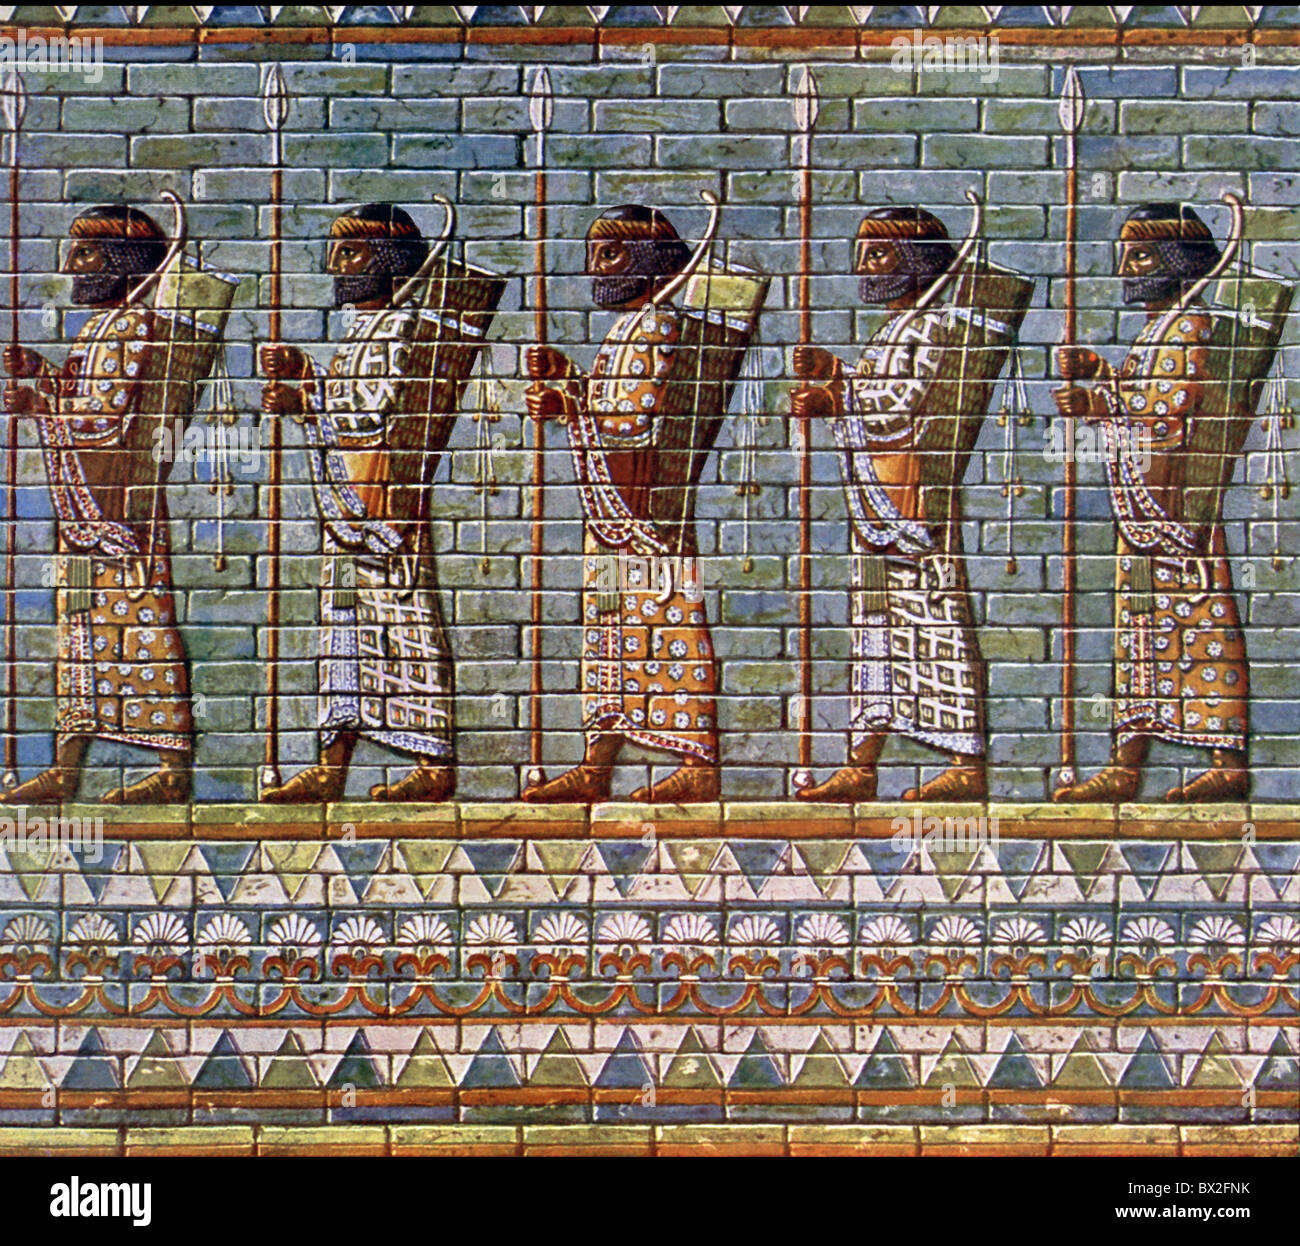 Frise en relief en tuiles vernissées de couleur de royal bodyguard est à partir de la salle des audiences (connu sous le nom de l'apadana) du palais royal. Banque D'Images